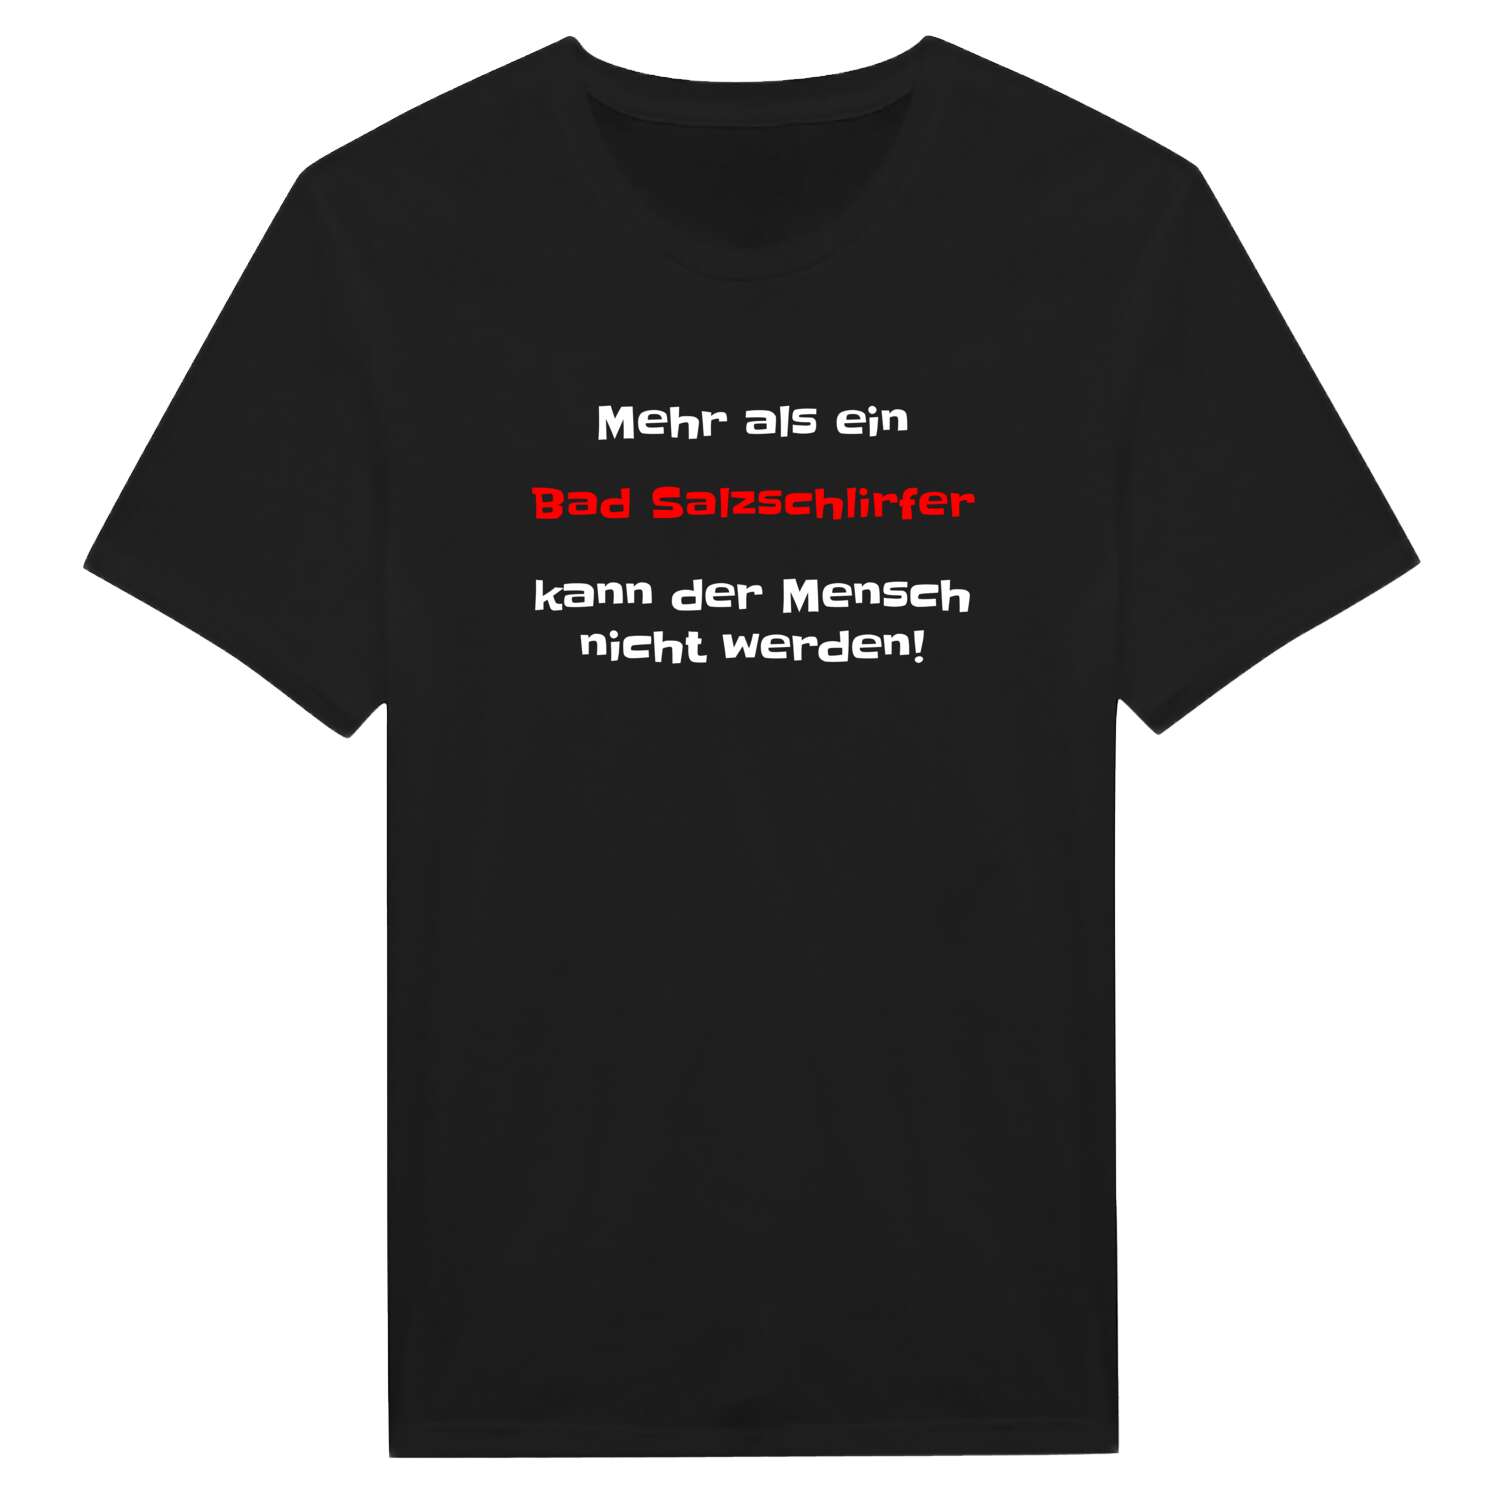 Bad Salzschlirf T-Shirt »Mehr als ein«